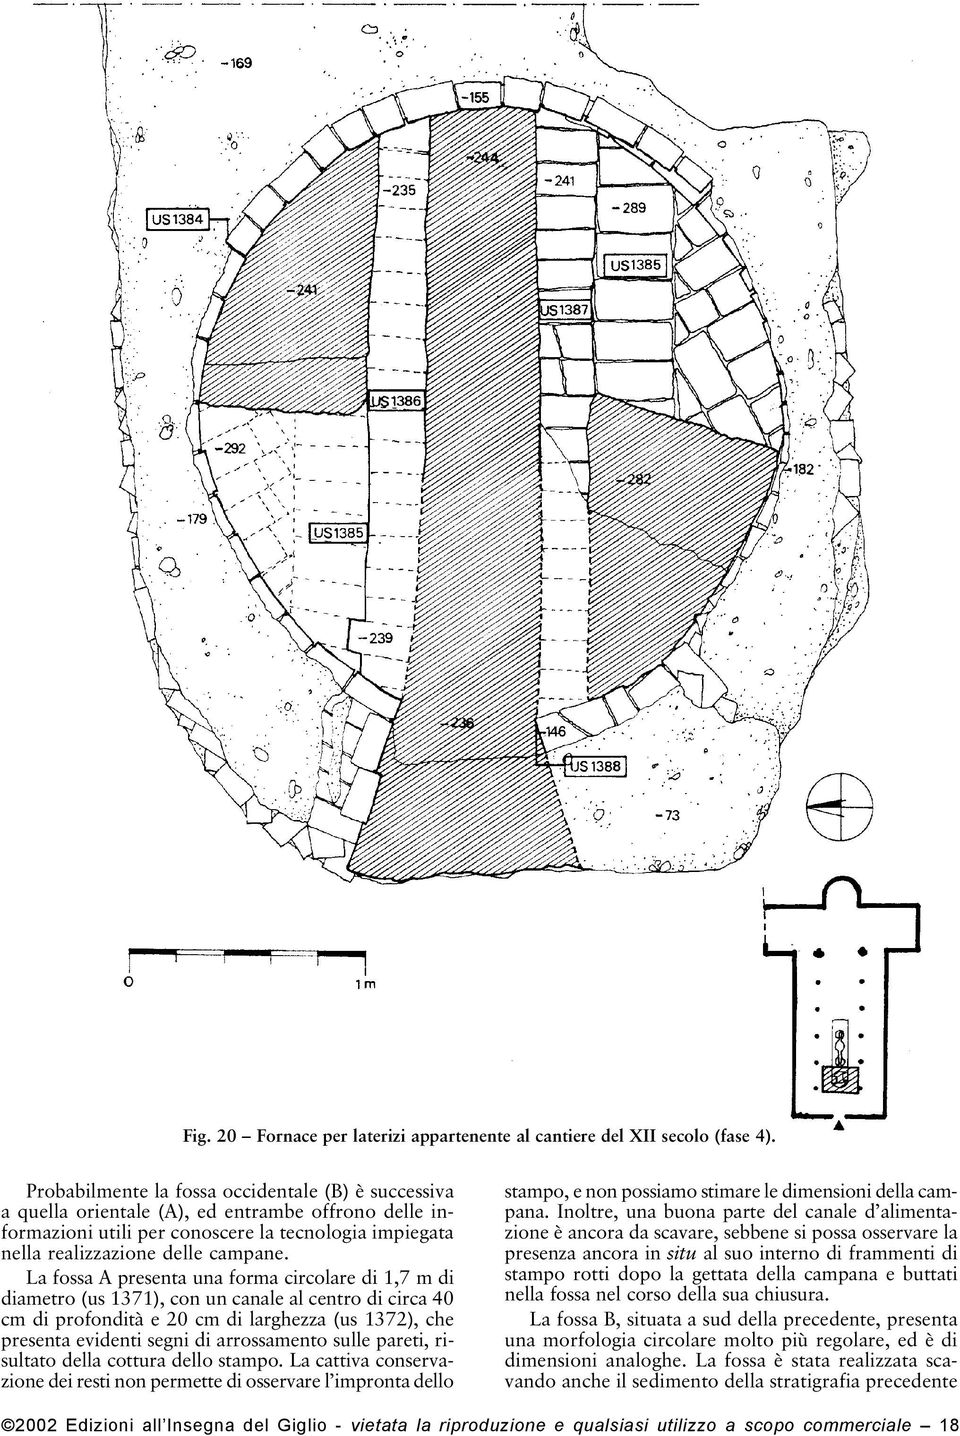 La fossa A presenta una forma circolare di 1,7 m di diametro (us 1371), con un canale al centro di circa 40 cm di profondità e 20 cm di larghezza (us 1372), che presenta evidenti segni di